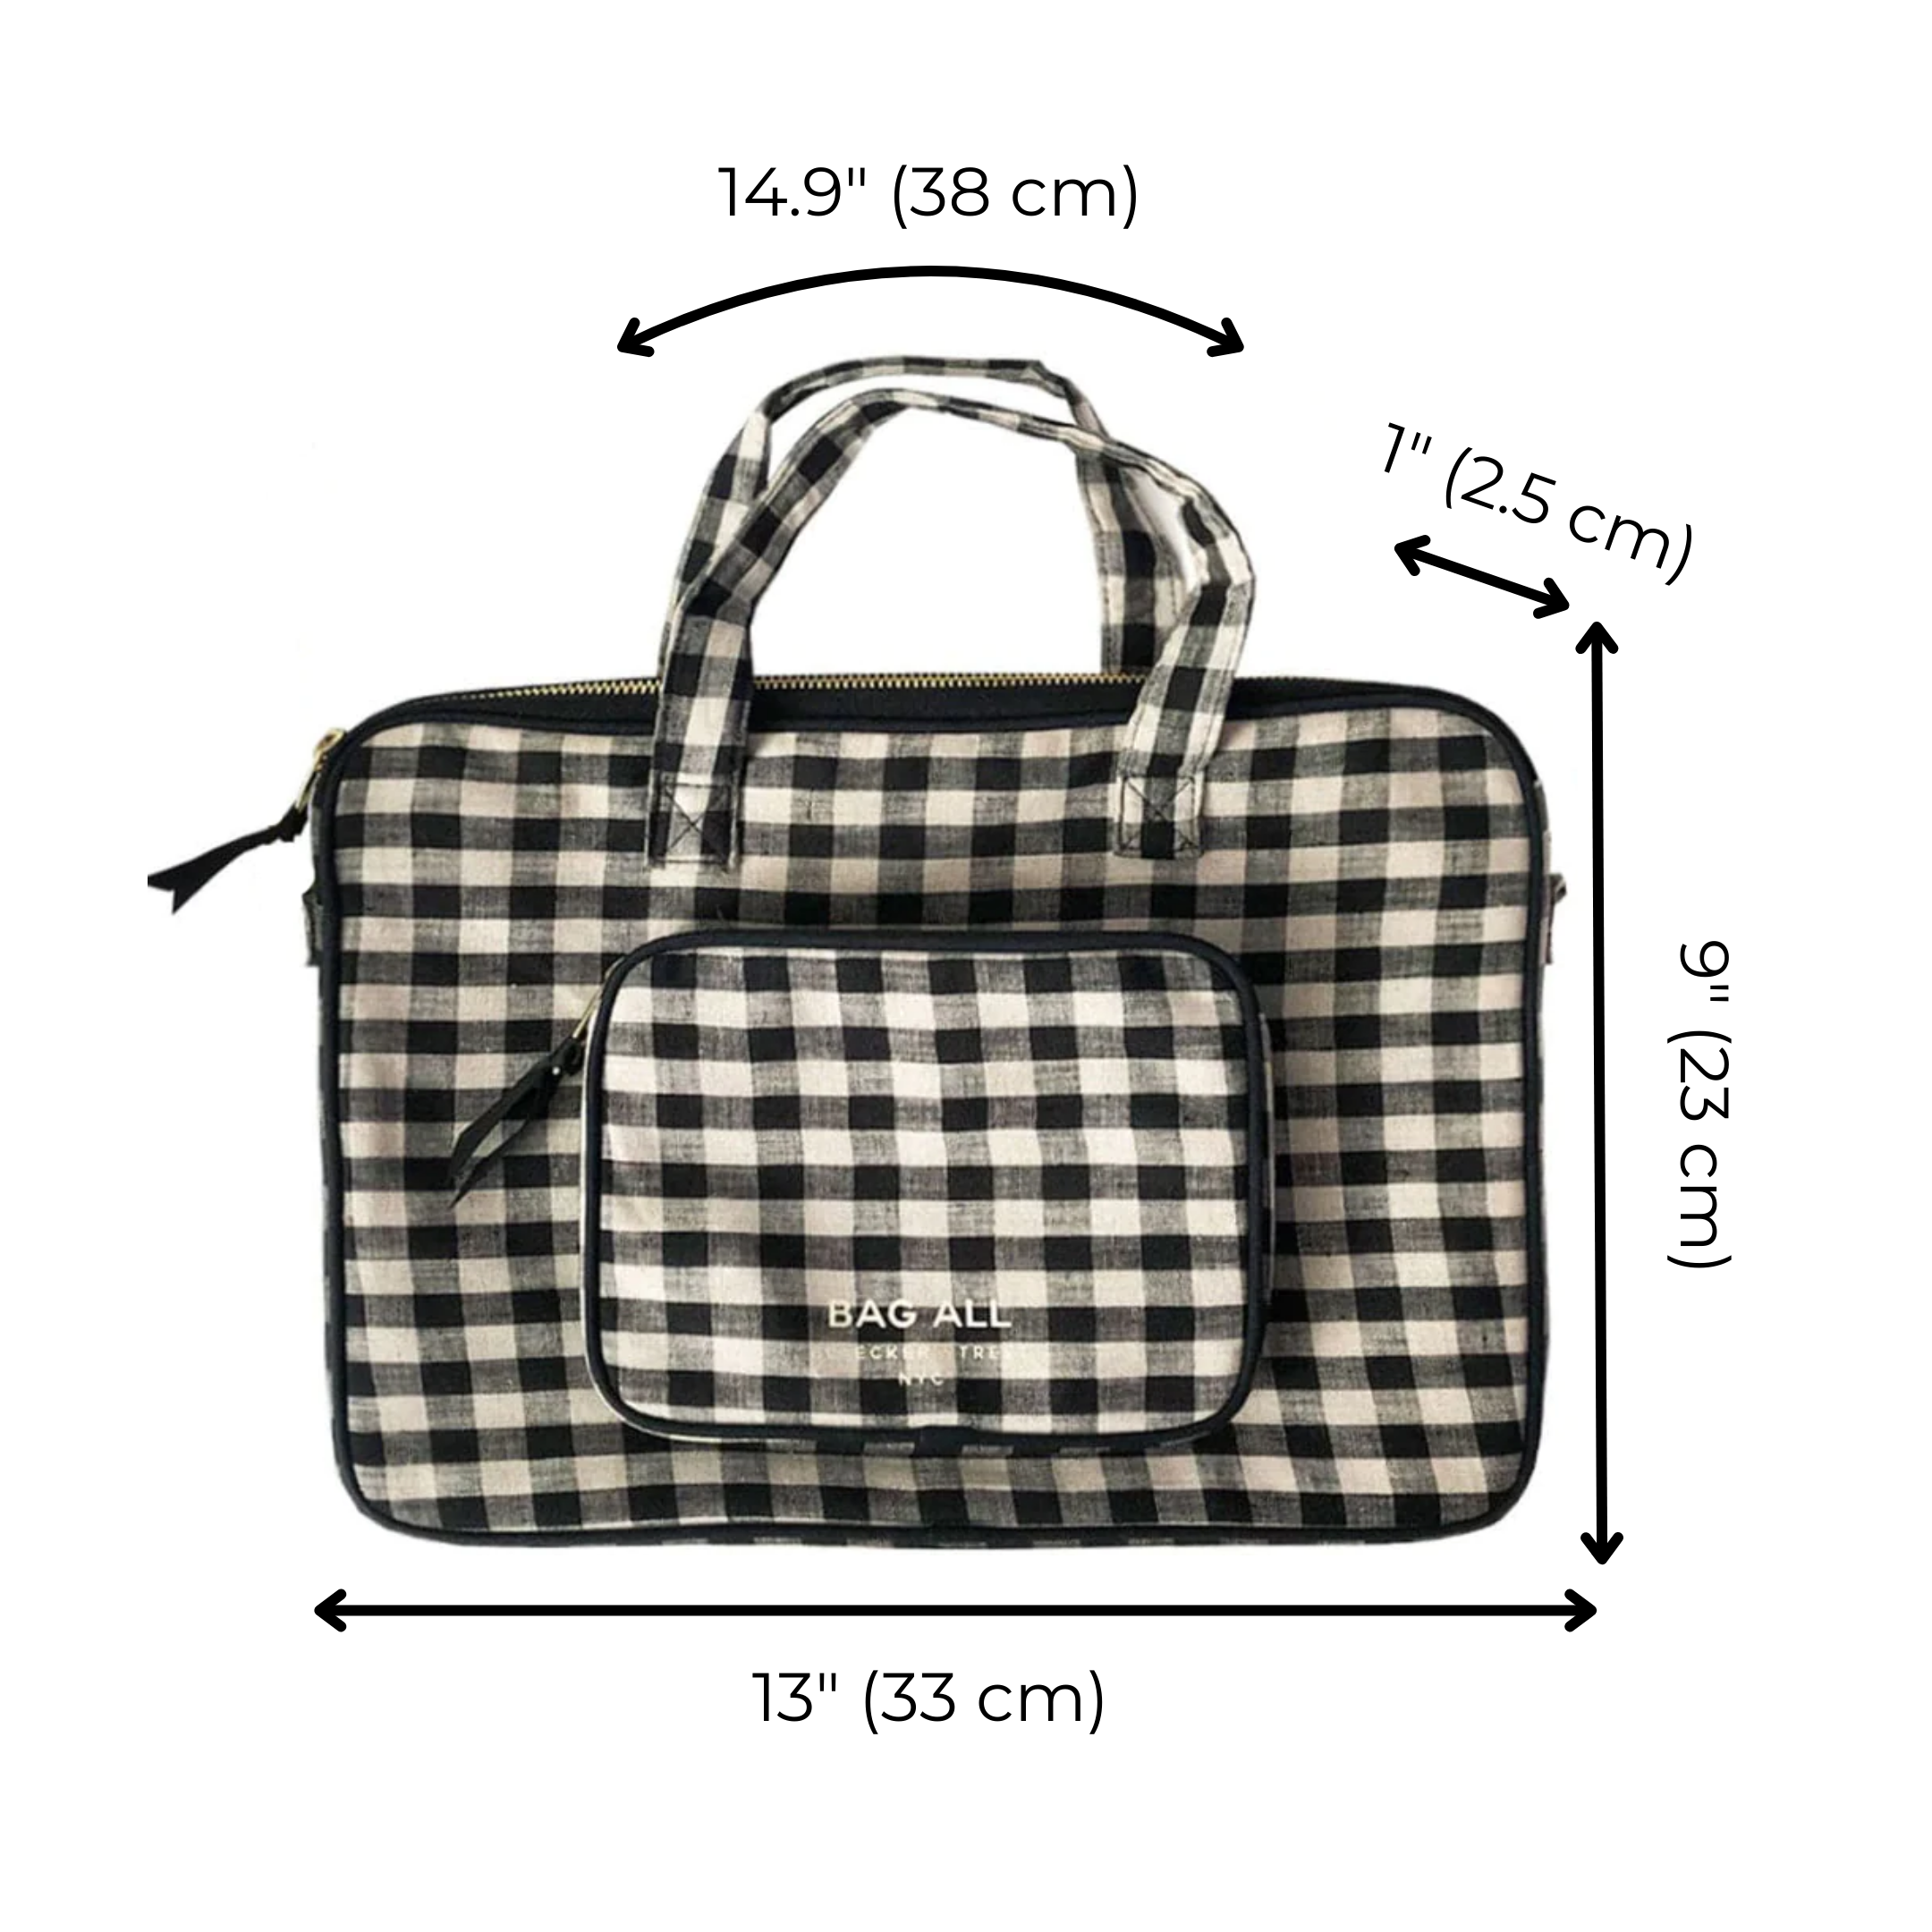 Laptop Case 13", Handle & Charger Pocket, Gingham | Bag-all